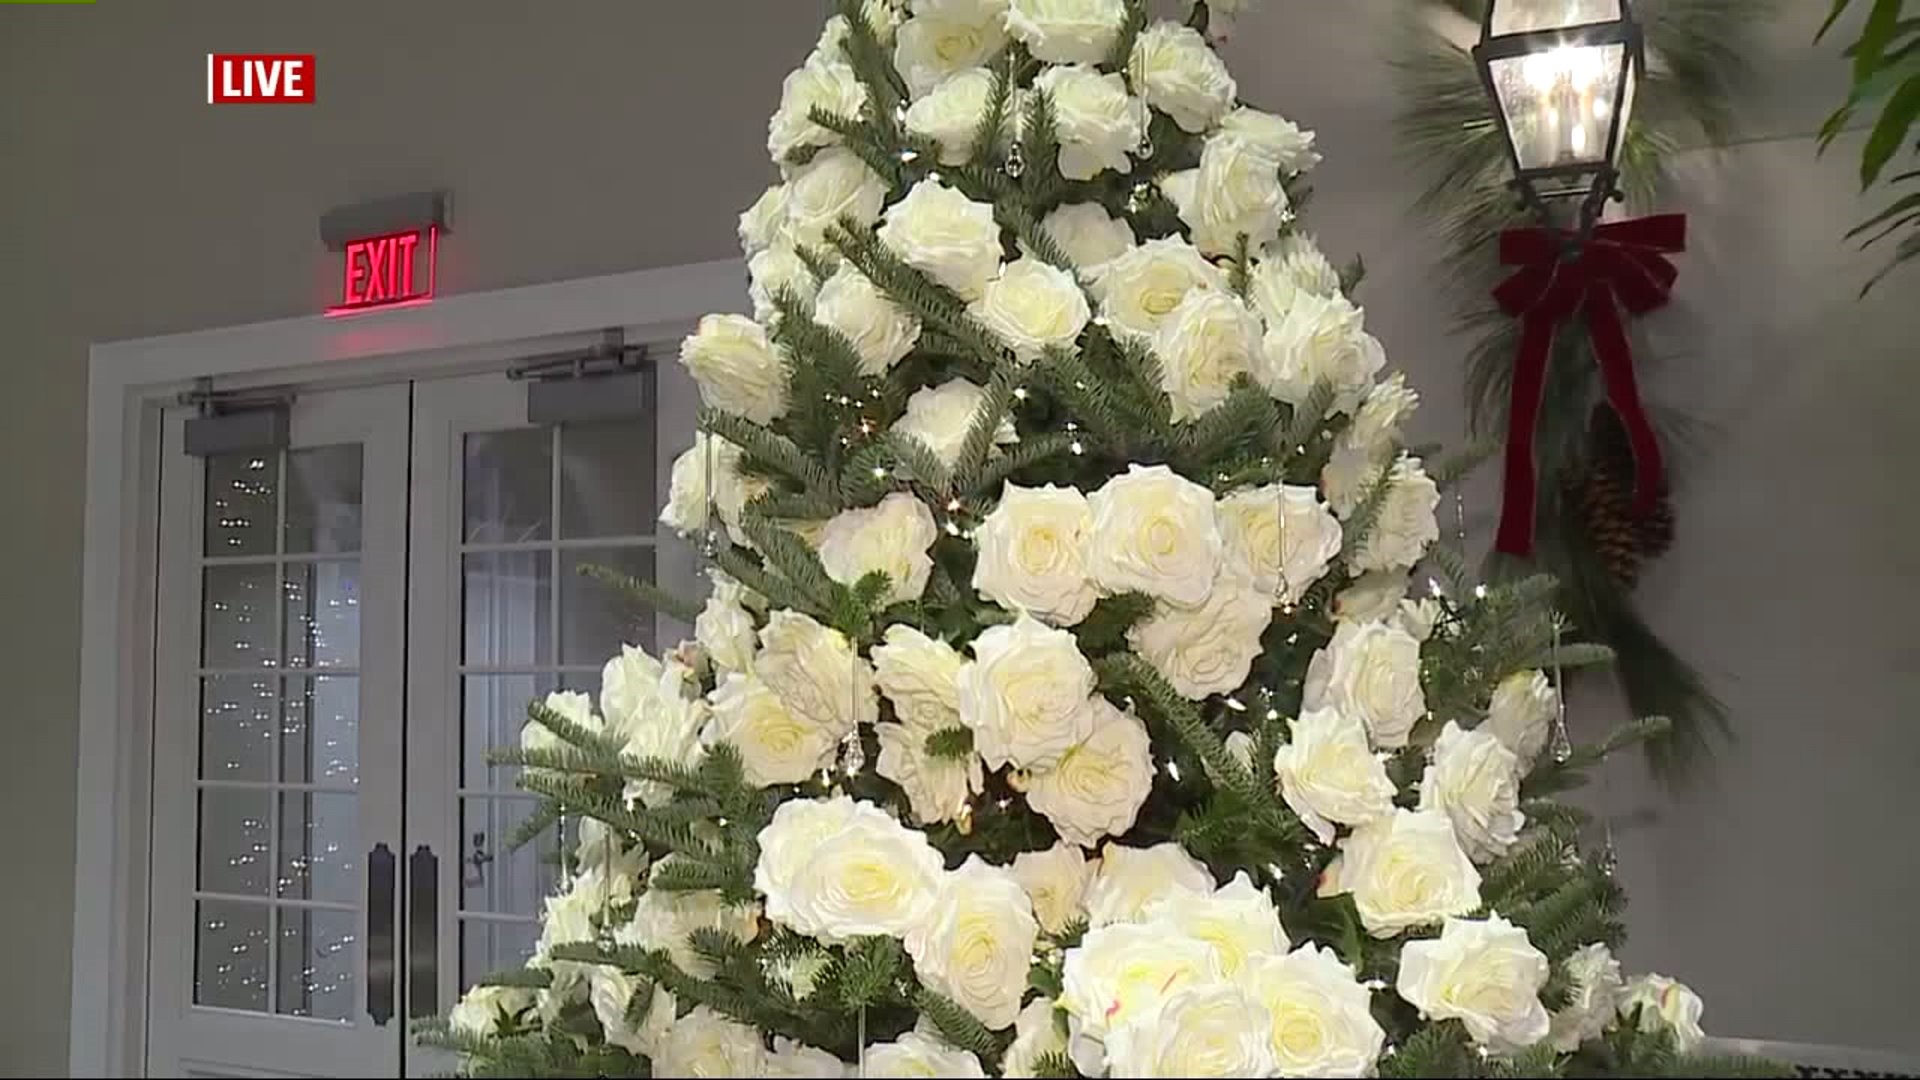 Christmas Tree Showcase at Hershey Gardens